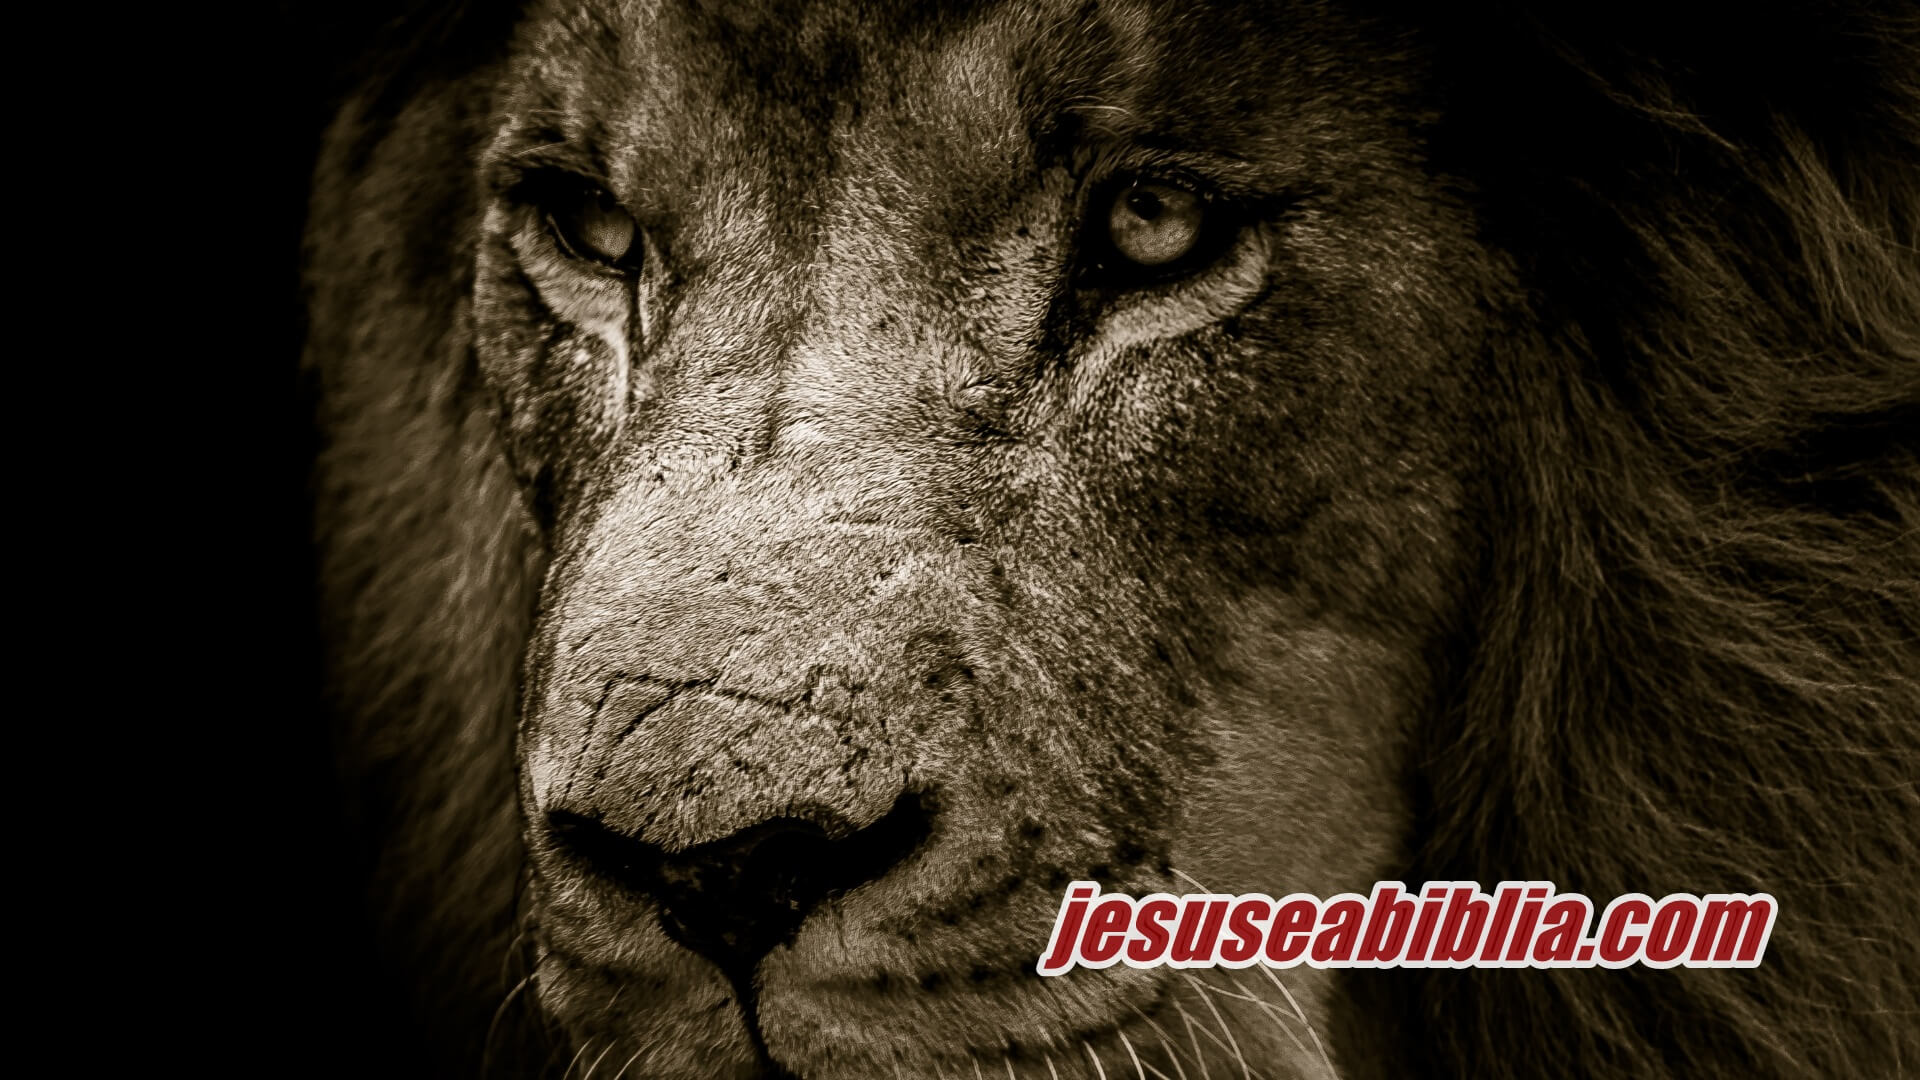 Quiz com 10 perguntas sobre o Profeta Daniel na Cova dos Leões